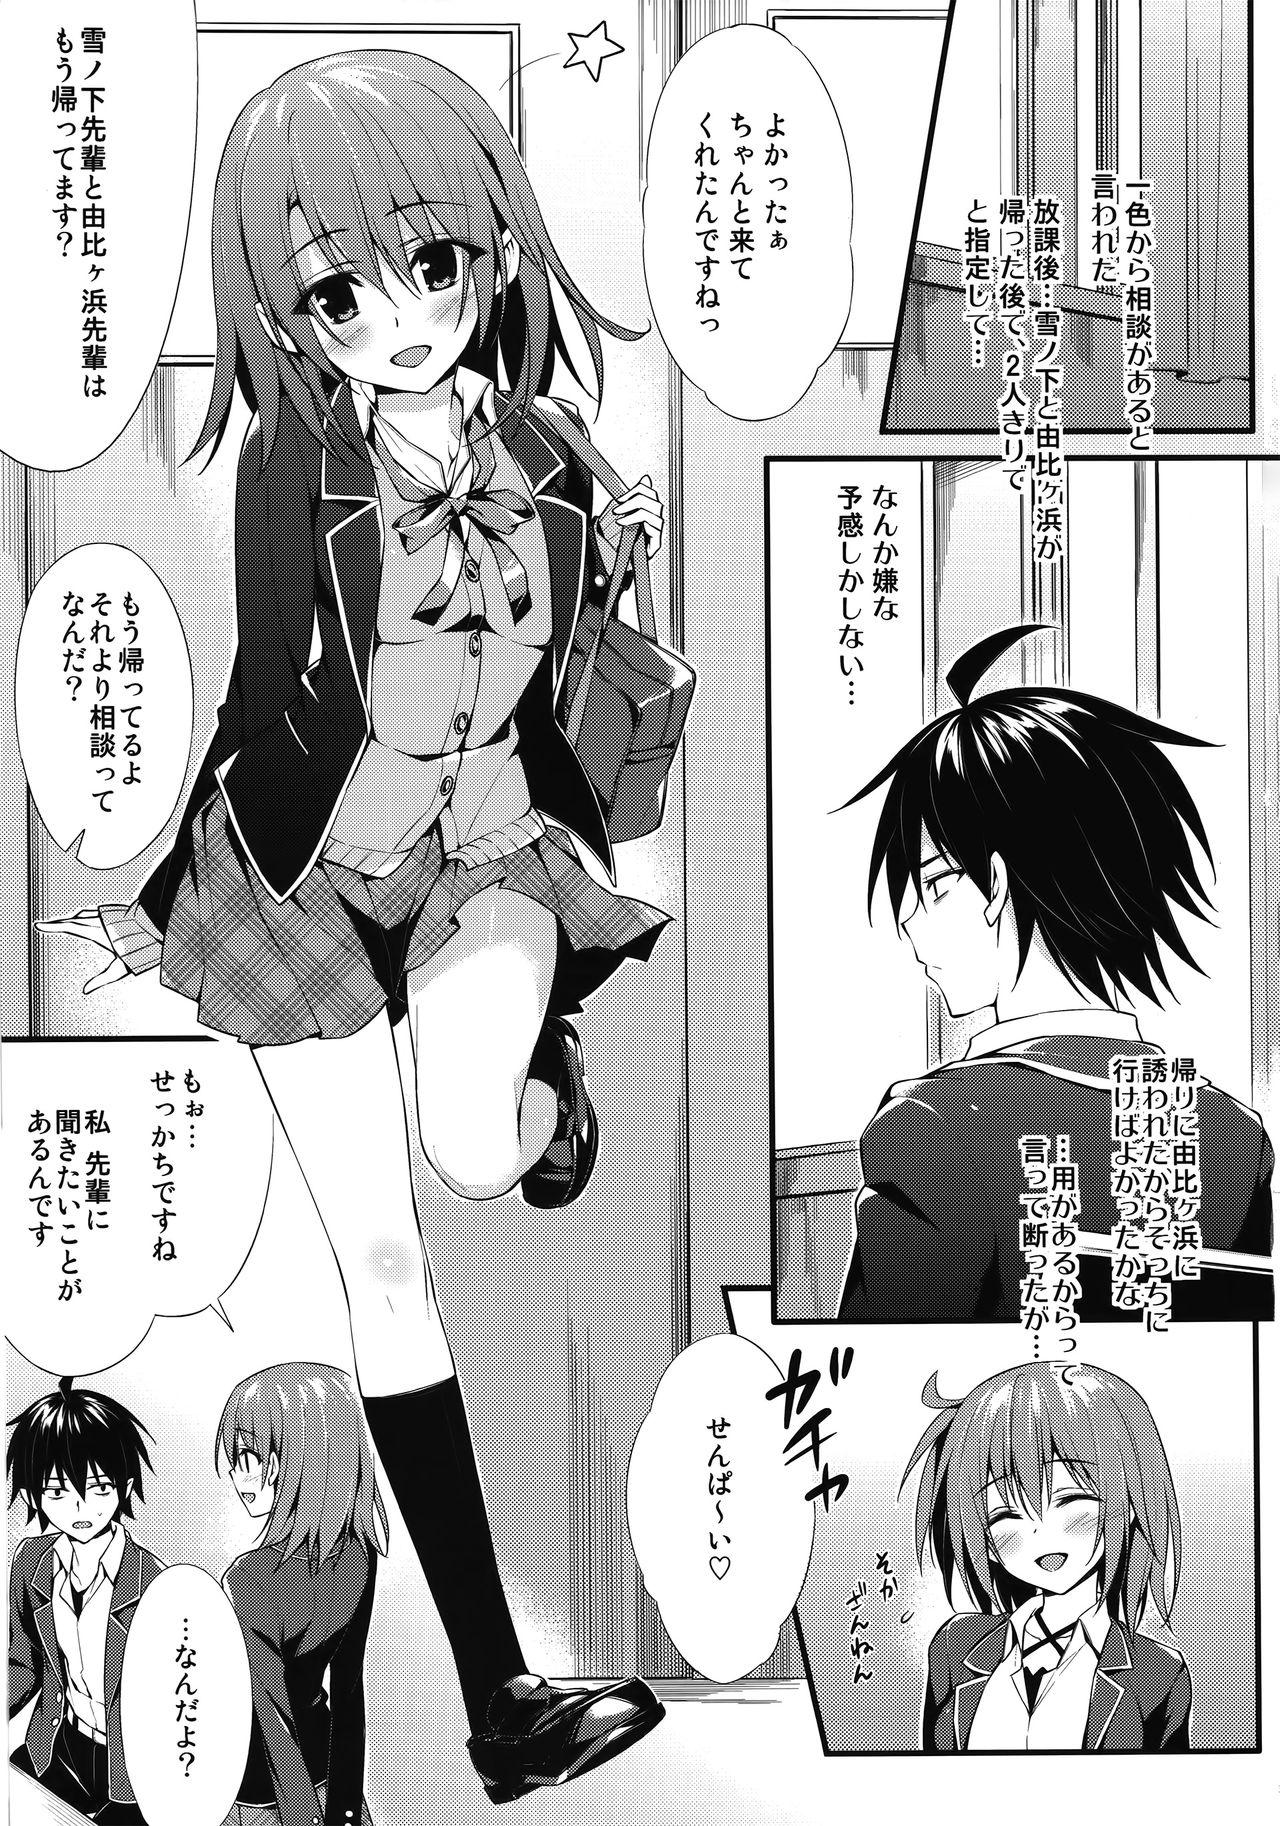 Hardcore Porno Irohasu Gentei - Yahari ore no seishun love come wa machigatteiru Sologirl - Page 2